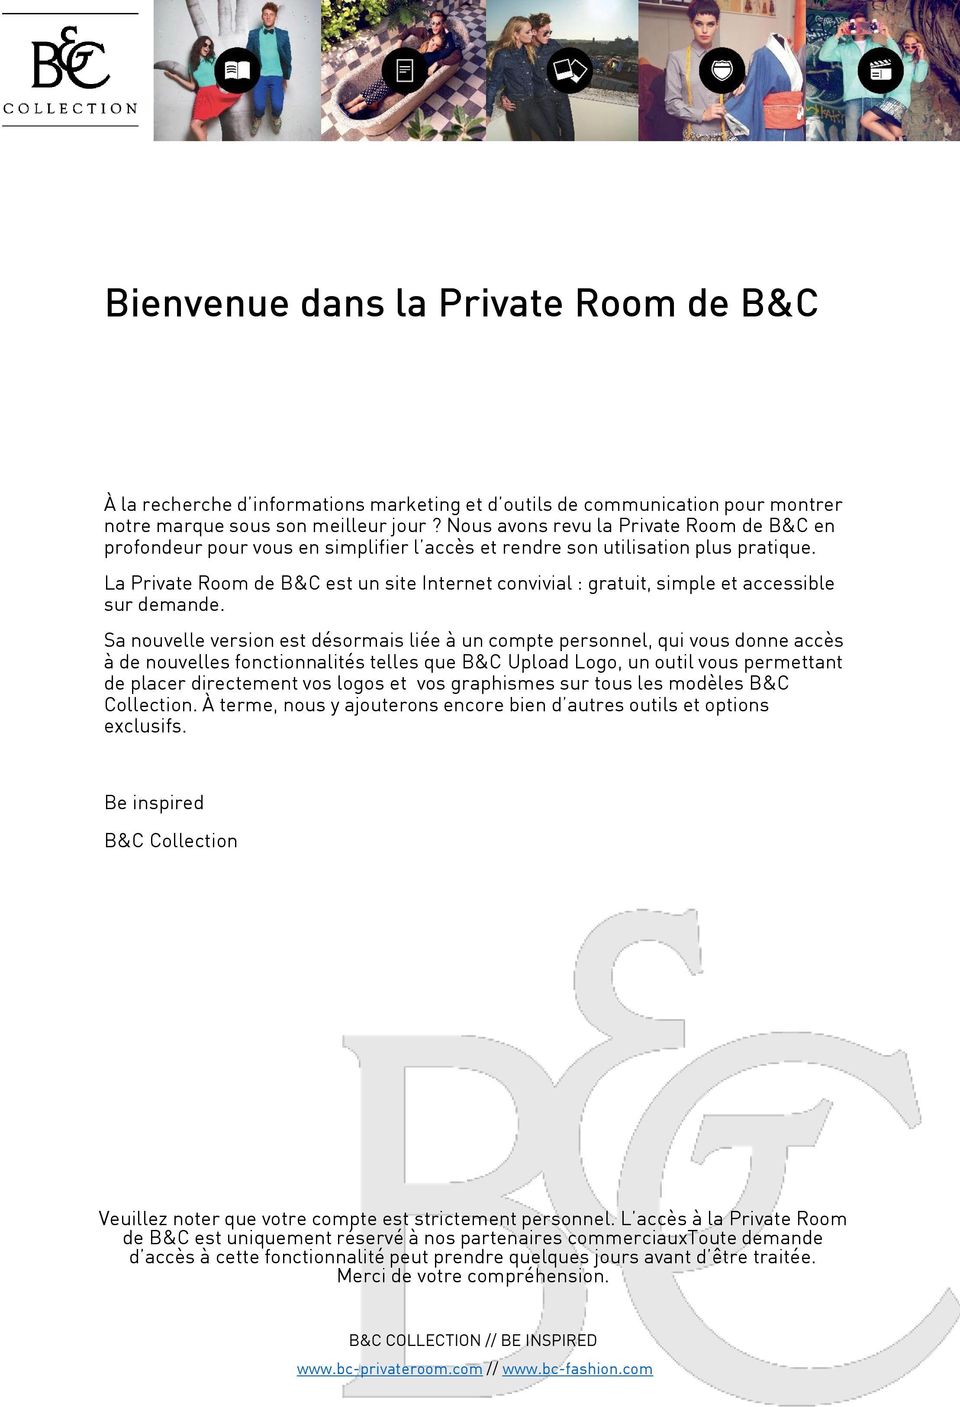 La Private Room de B&C est un site Internet convivial : gratuit, simple et accessible sur demande.